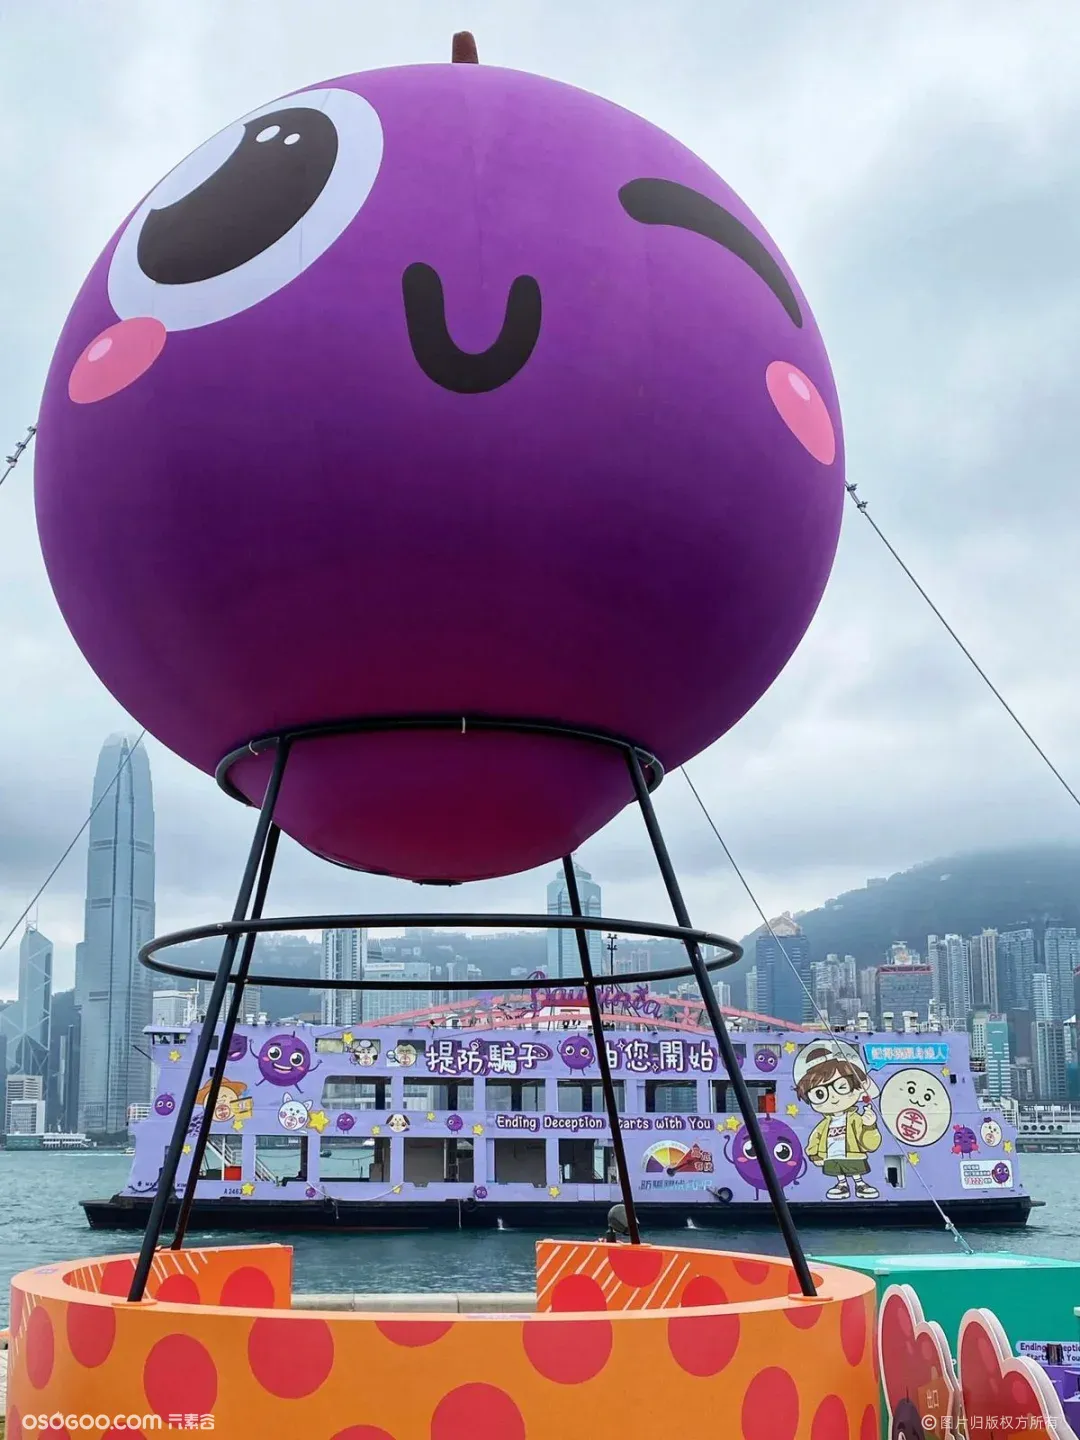 香港超前的 "亲子嘉年华" 竟然是阿sir的花式反许宣传?